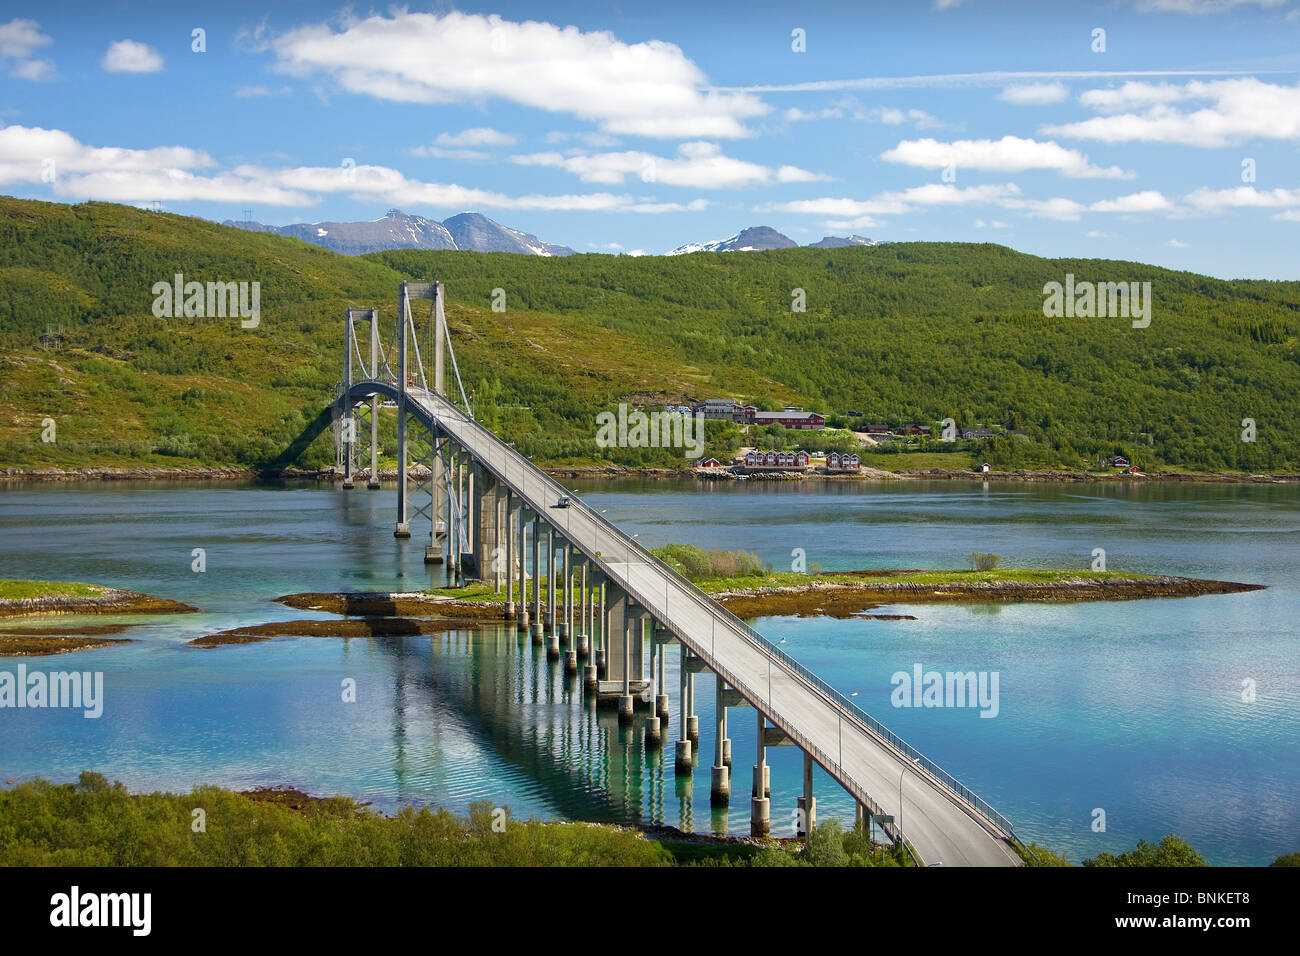 La Norvège Scandinavie Tjelsund le débit près de la rivière bridge pont suspendu de la ville de Narvik voyage vacances voyage vacances eau Banque D'Images